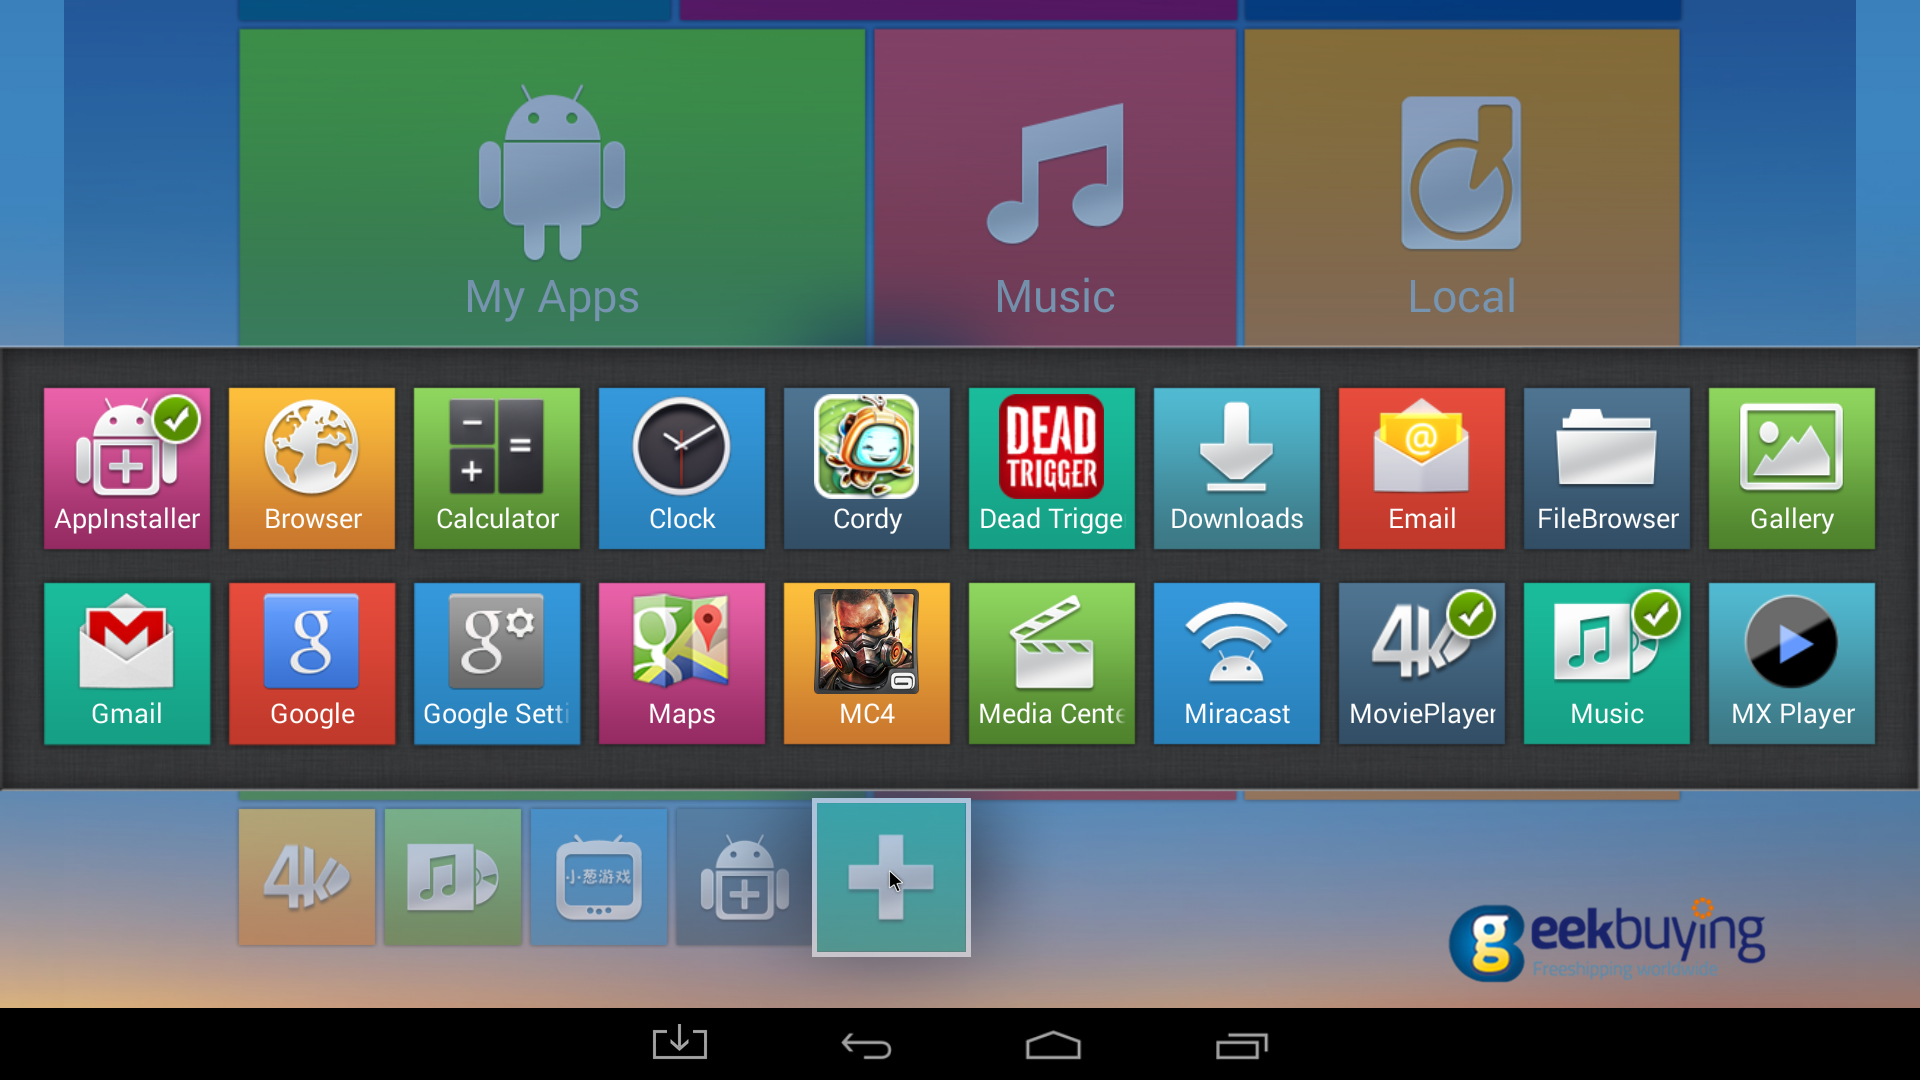 [Product Review] Tronsmart Vega S89 Amlogic S802 Quad Core Android 4.4 Kitkat TV BOX Review